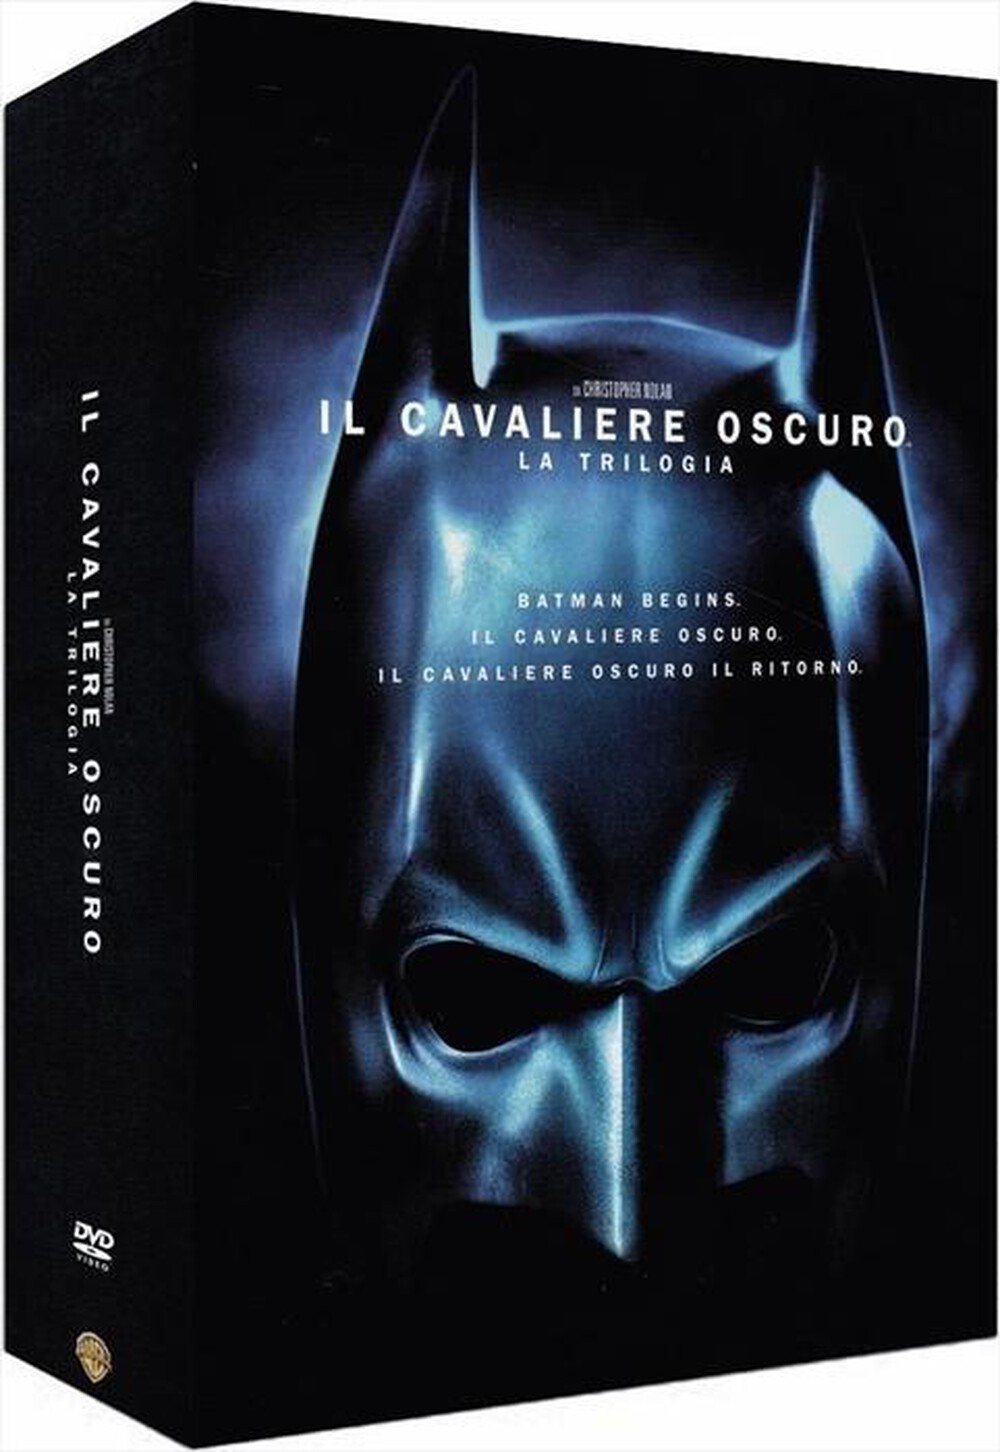 "WARNER HOME VIDEO - Cavaliere Oscuro (Il) - Trilogia (3 Dvd)"